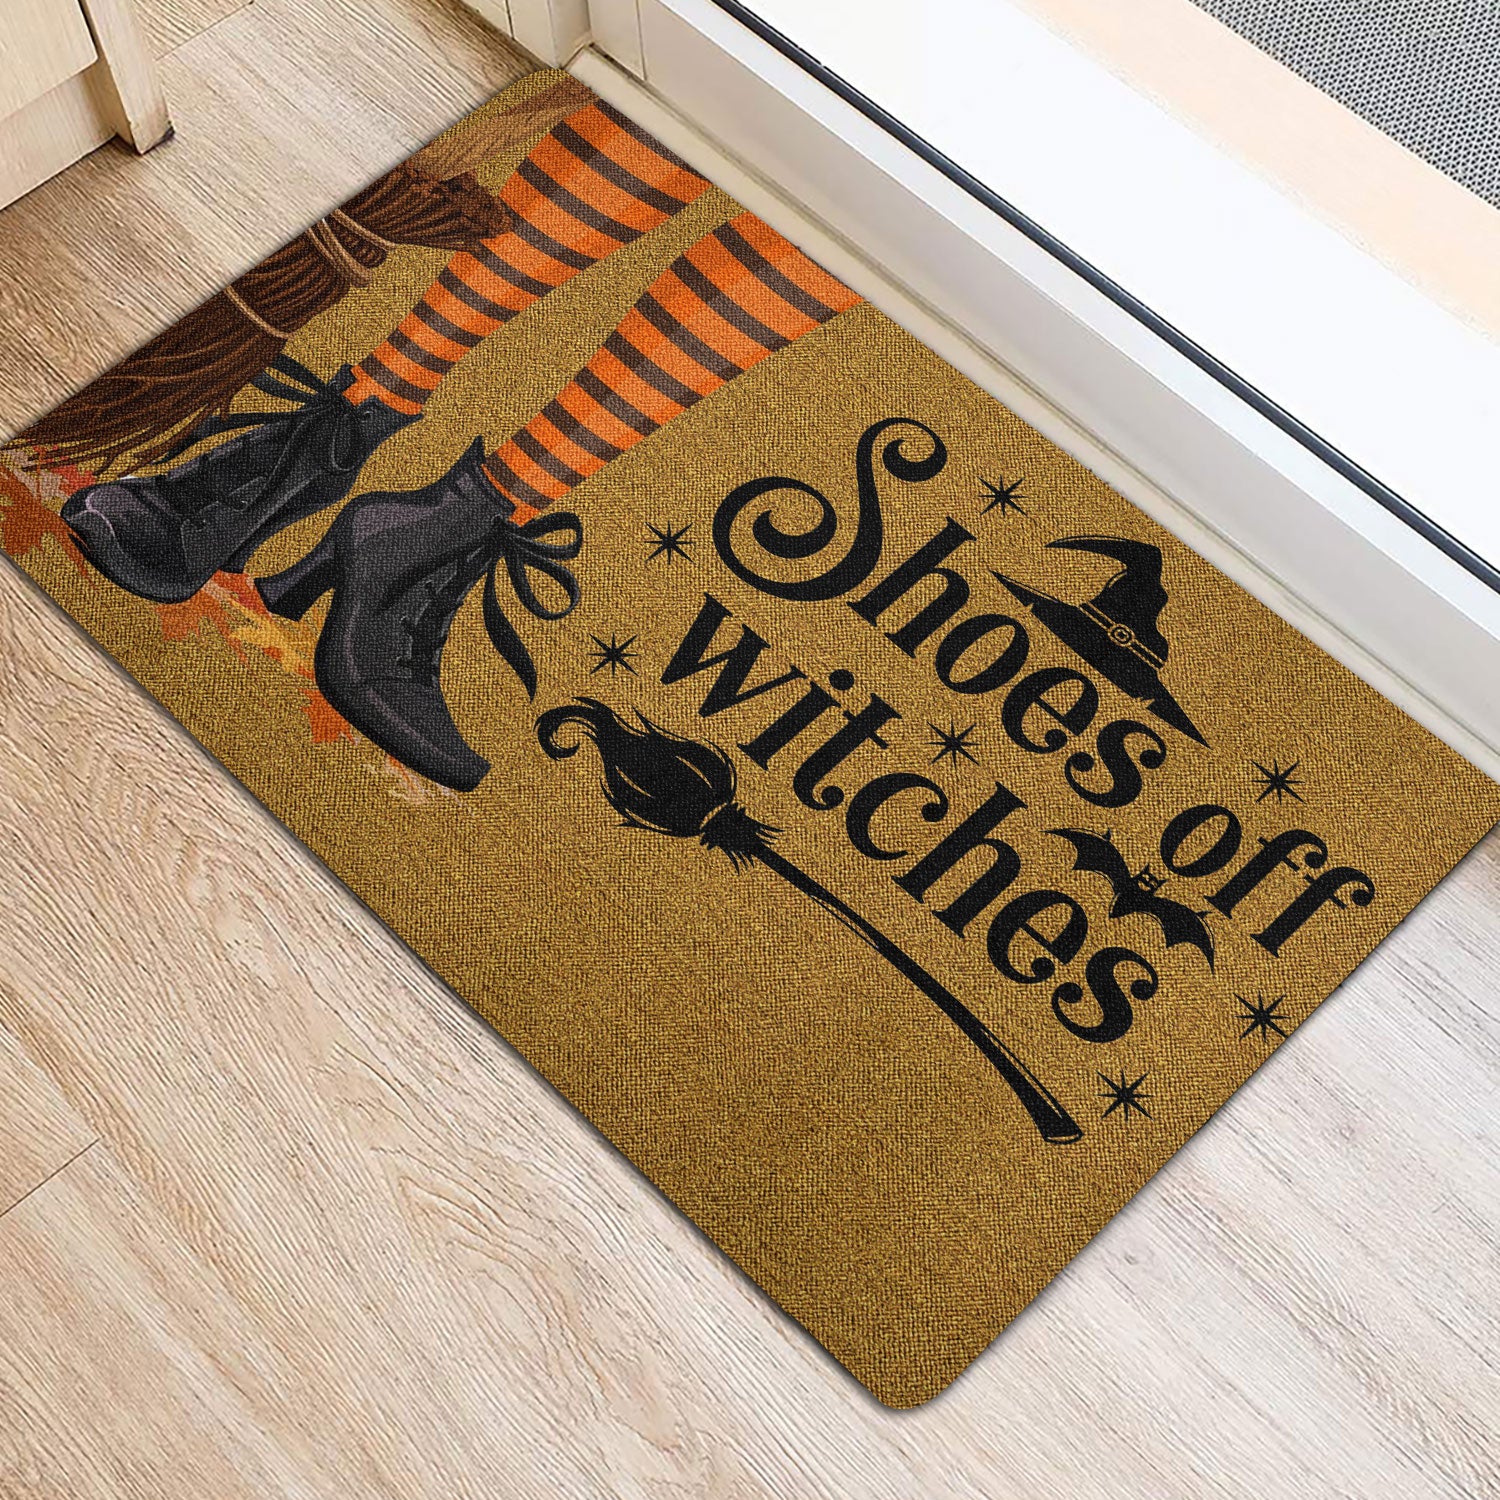 Ohaprints-Doormat-Outdoor-Indoor-Witch-Wicca-Trick-Or-Treat-Shoes-Off-Witches-Happy-Halloween-Rubber-Door-Mat-1942-